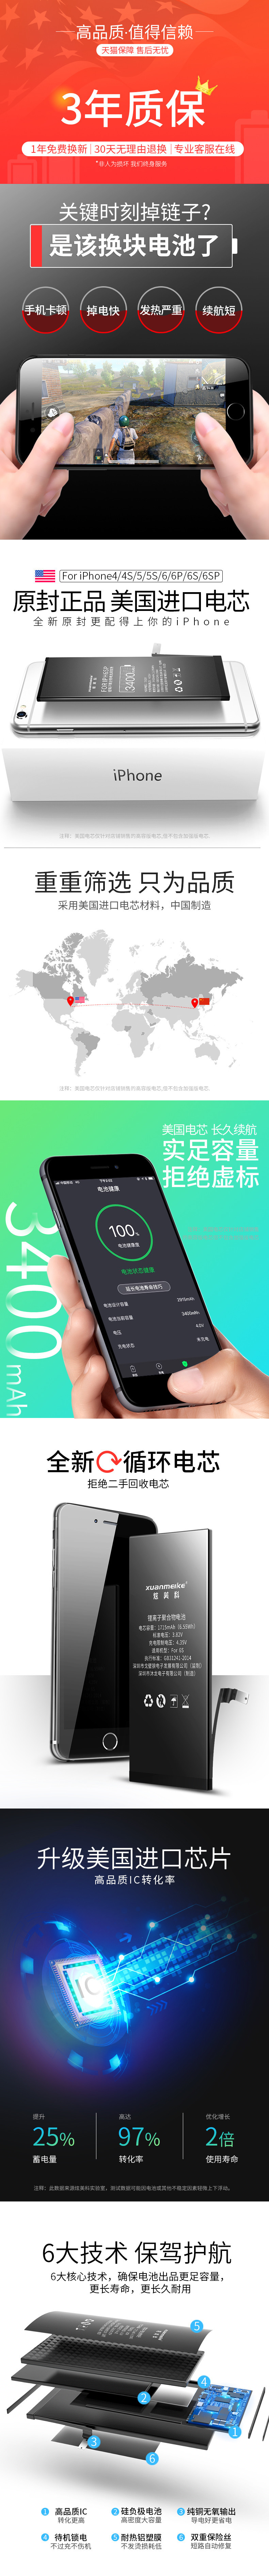 淘宝美工乙木淘宝天猫iphone苹果6s苹果电池详情页描述设计作品